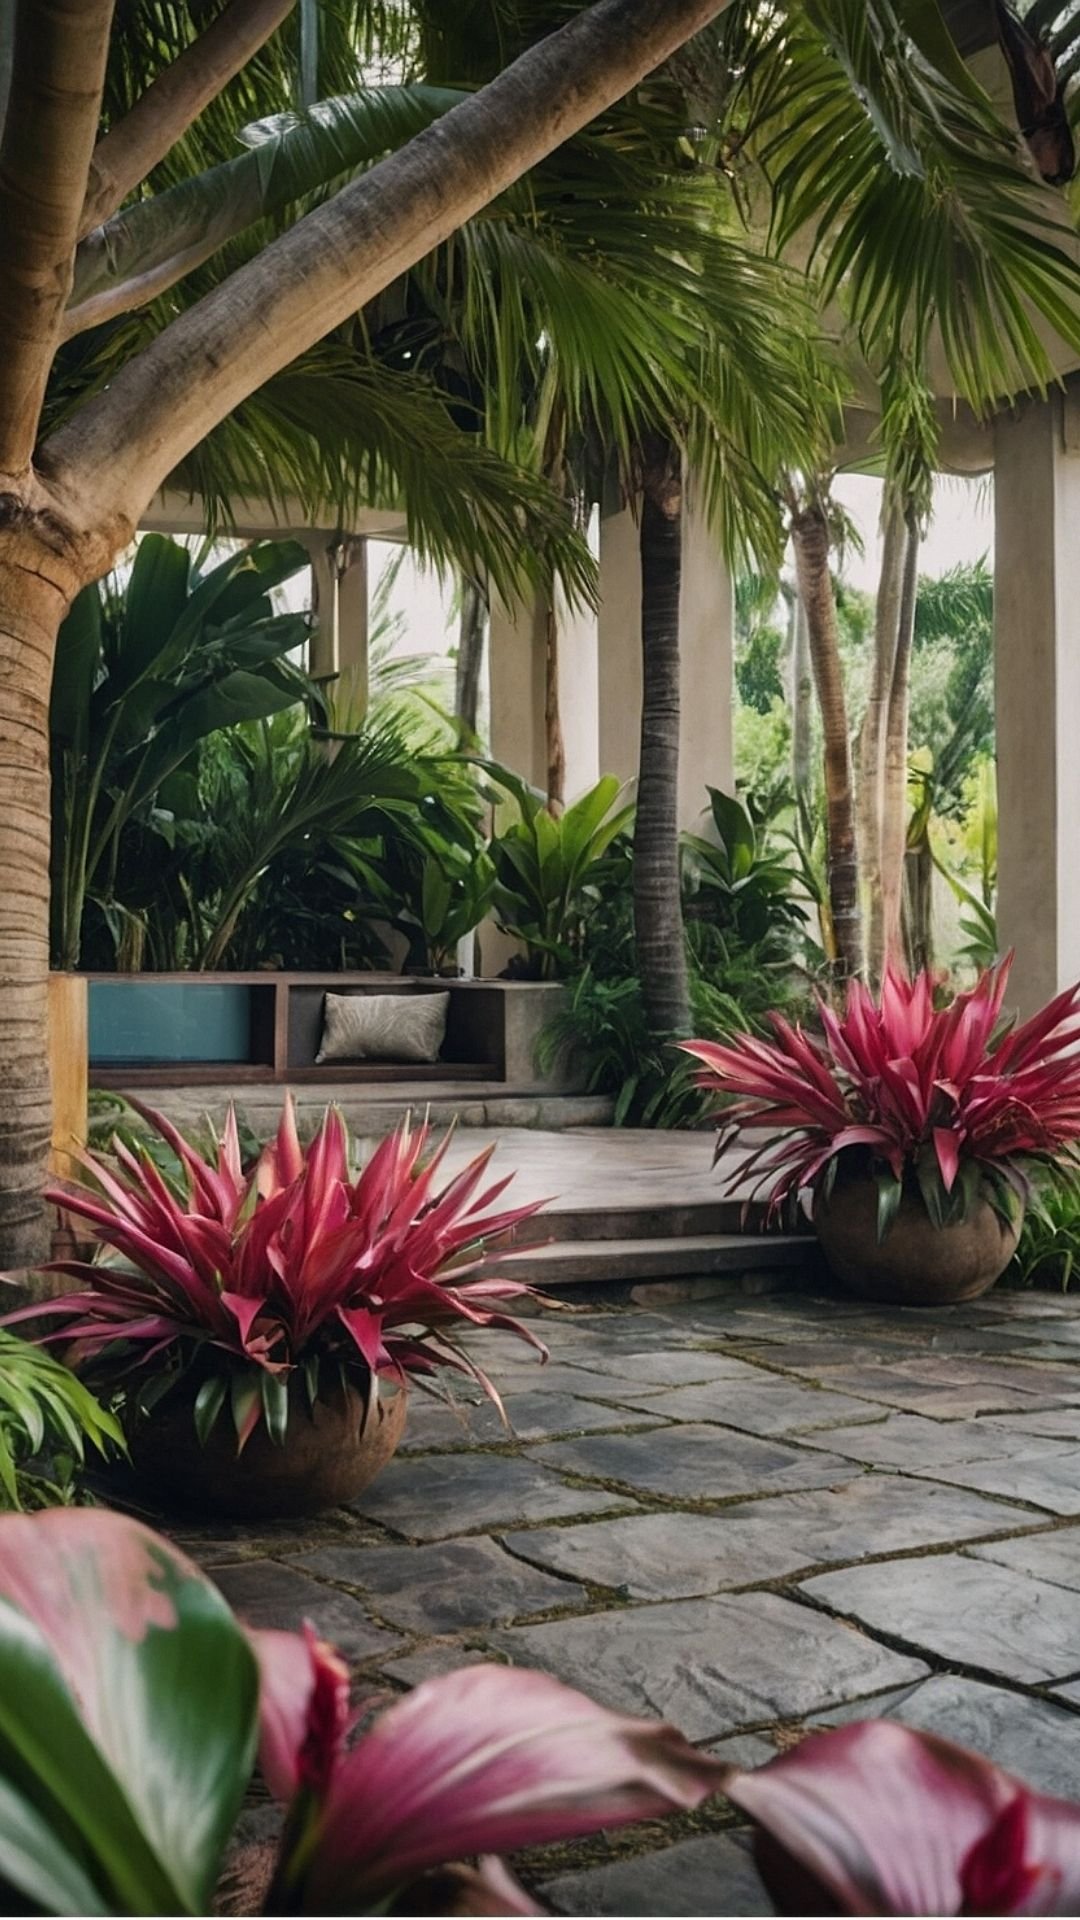 Palms Promenade: A Stroll Through Tropical Splendor